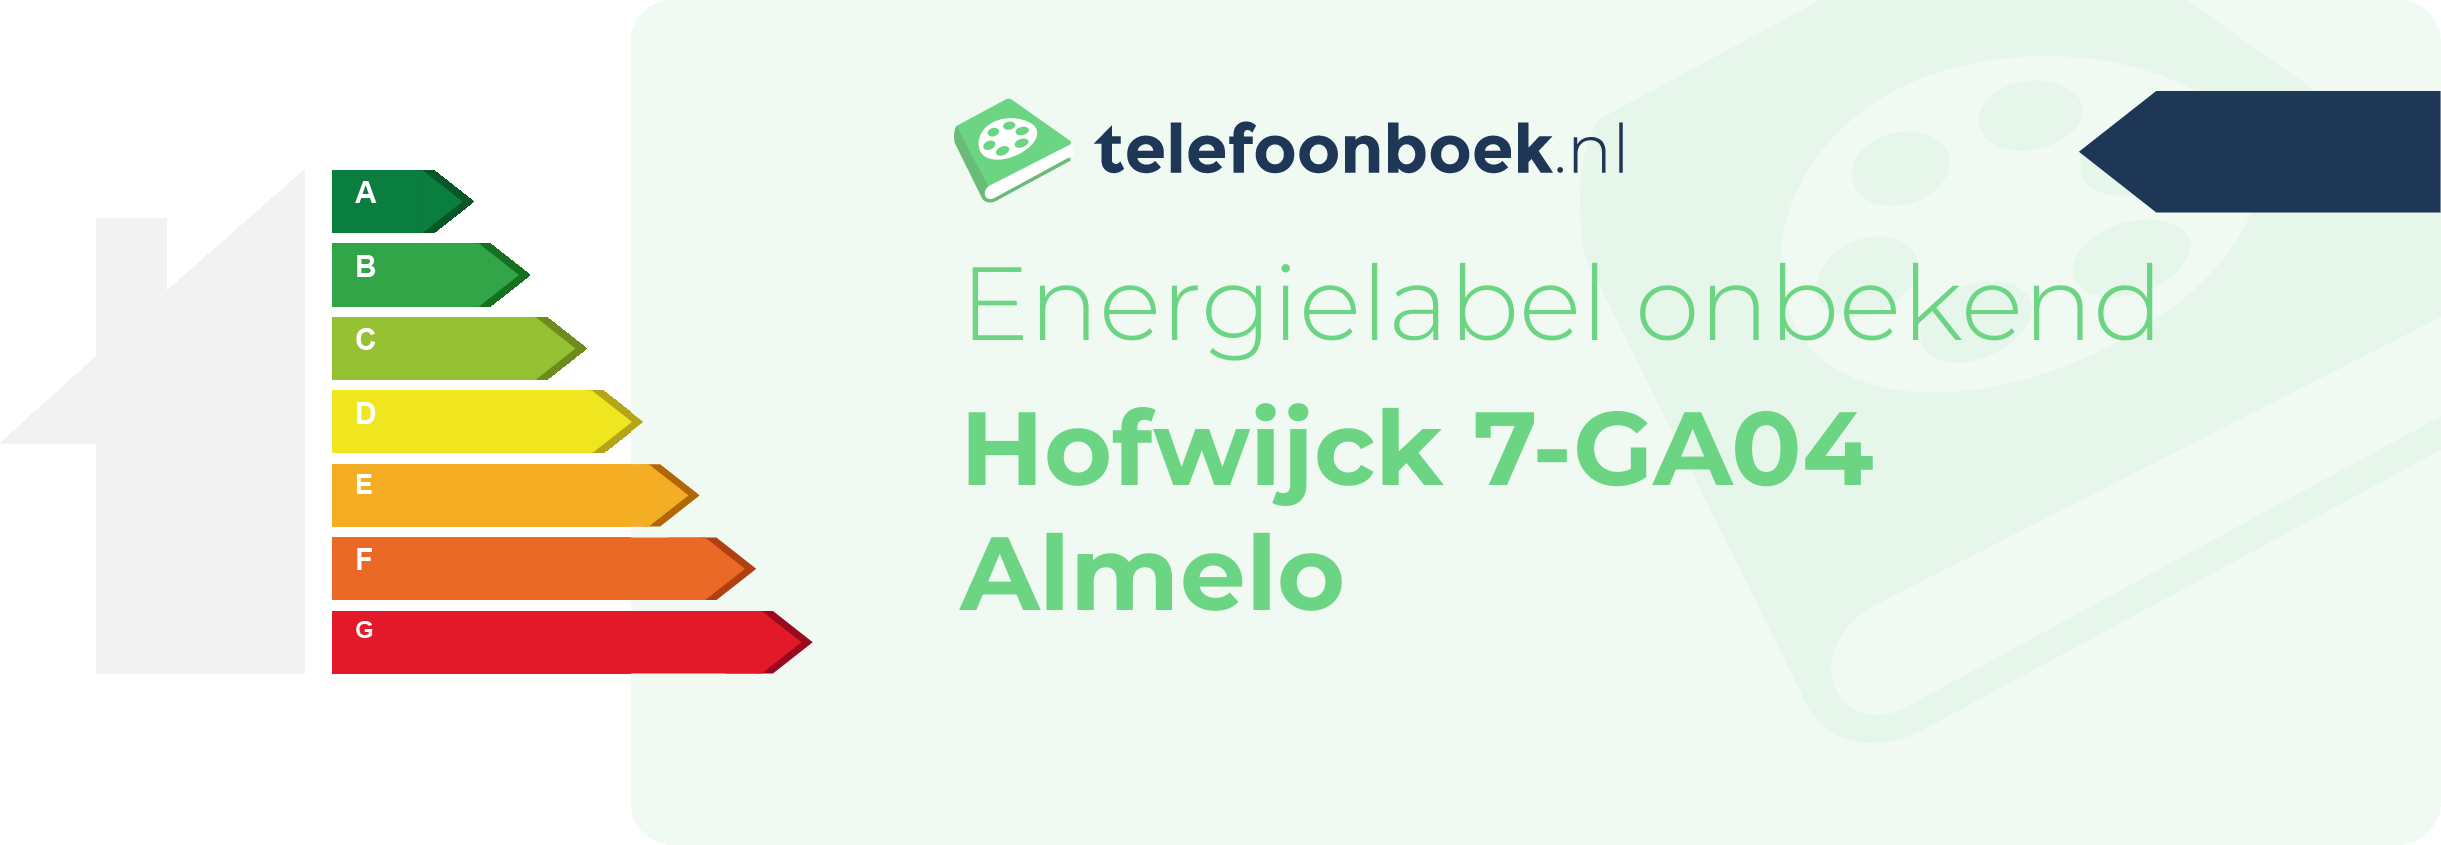 Energielabel Hofwijck 7-GA04 Almelo